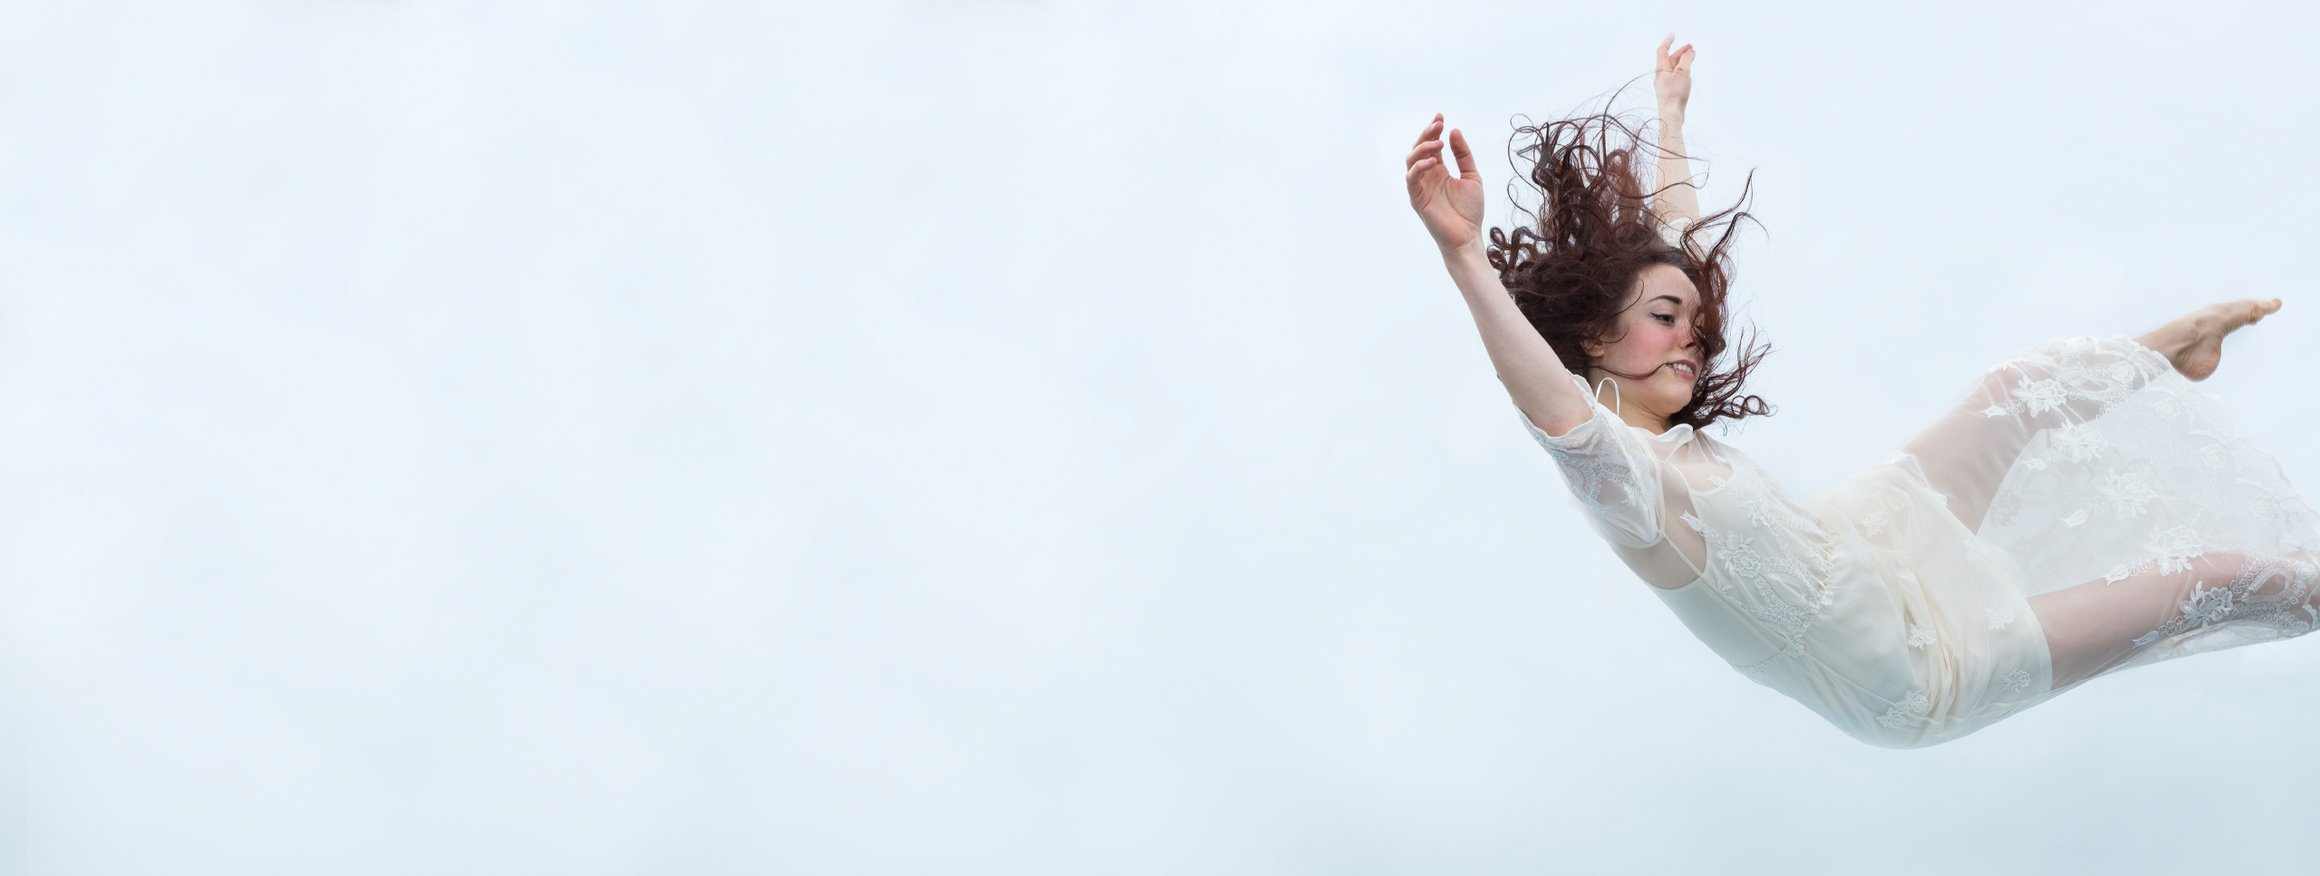 Das Foto zeigt eine Frau in weißem Kleid, die in der Luft schwebt.